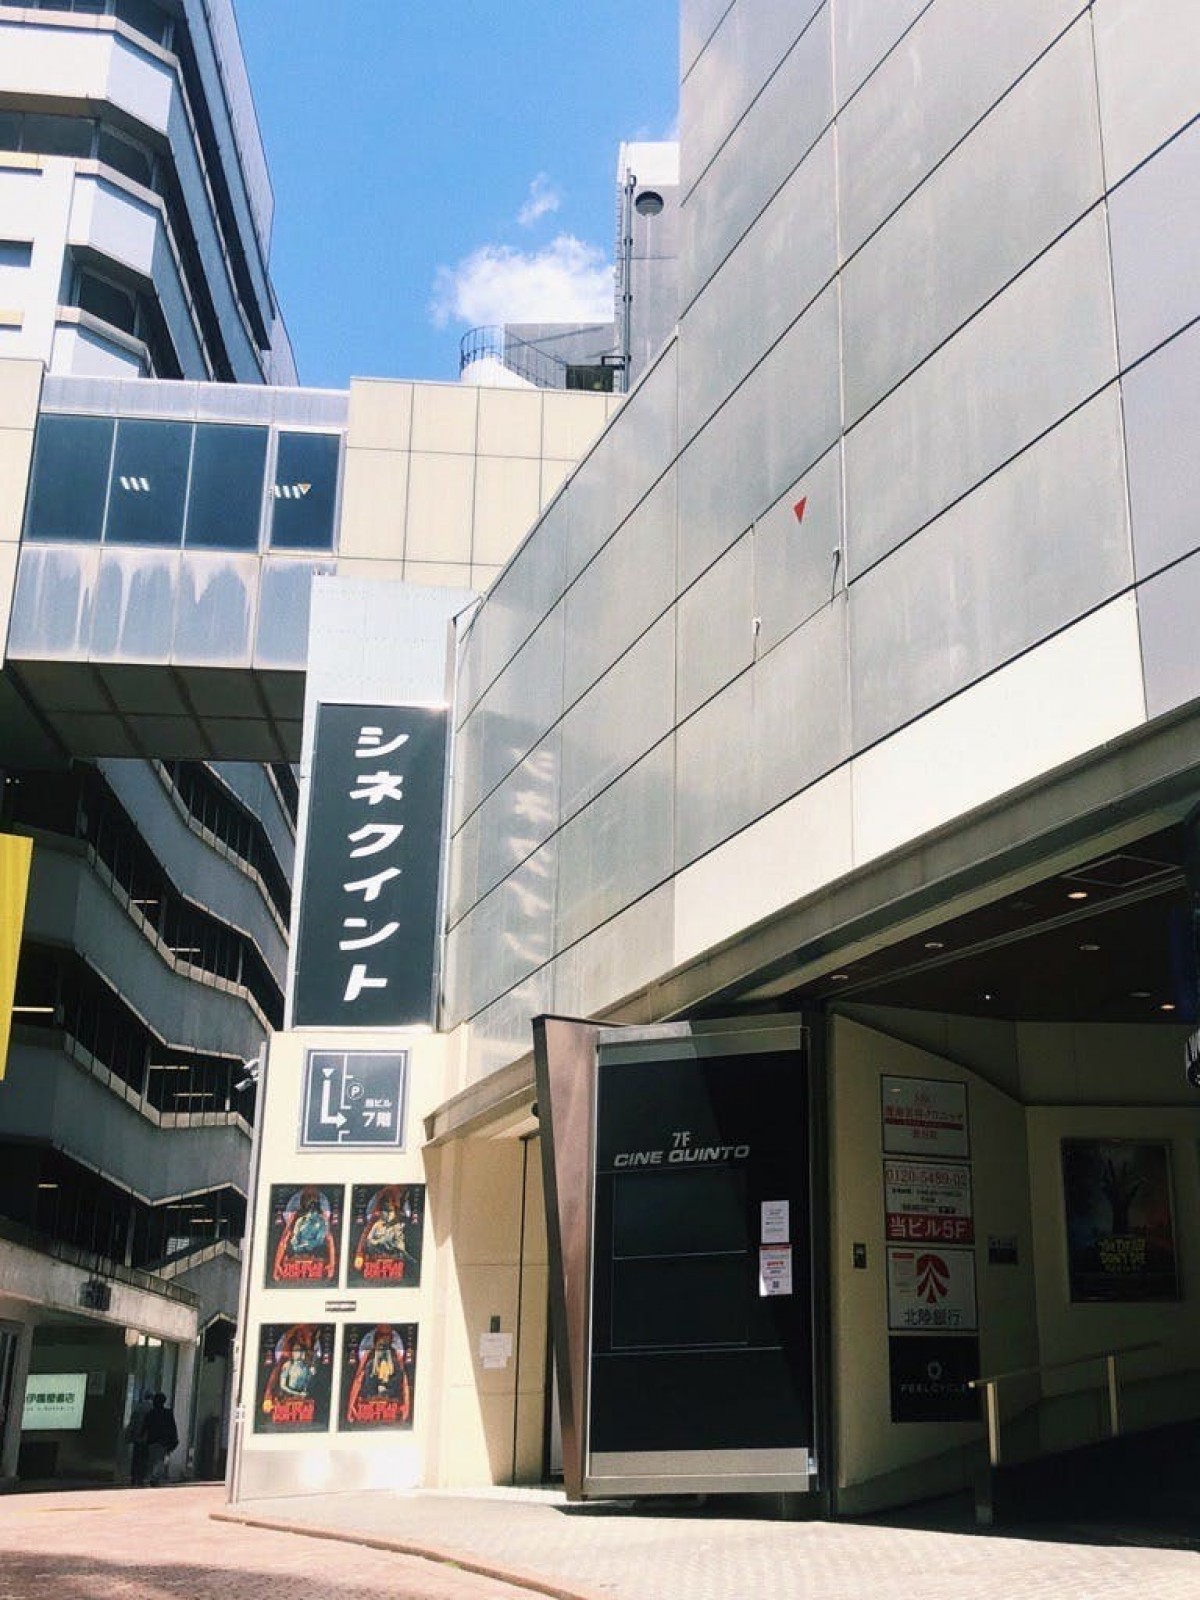 20年間続く渋谷の映画館「CINE QUINTO」が存続をかけて支援募集